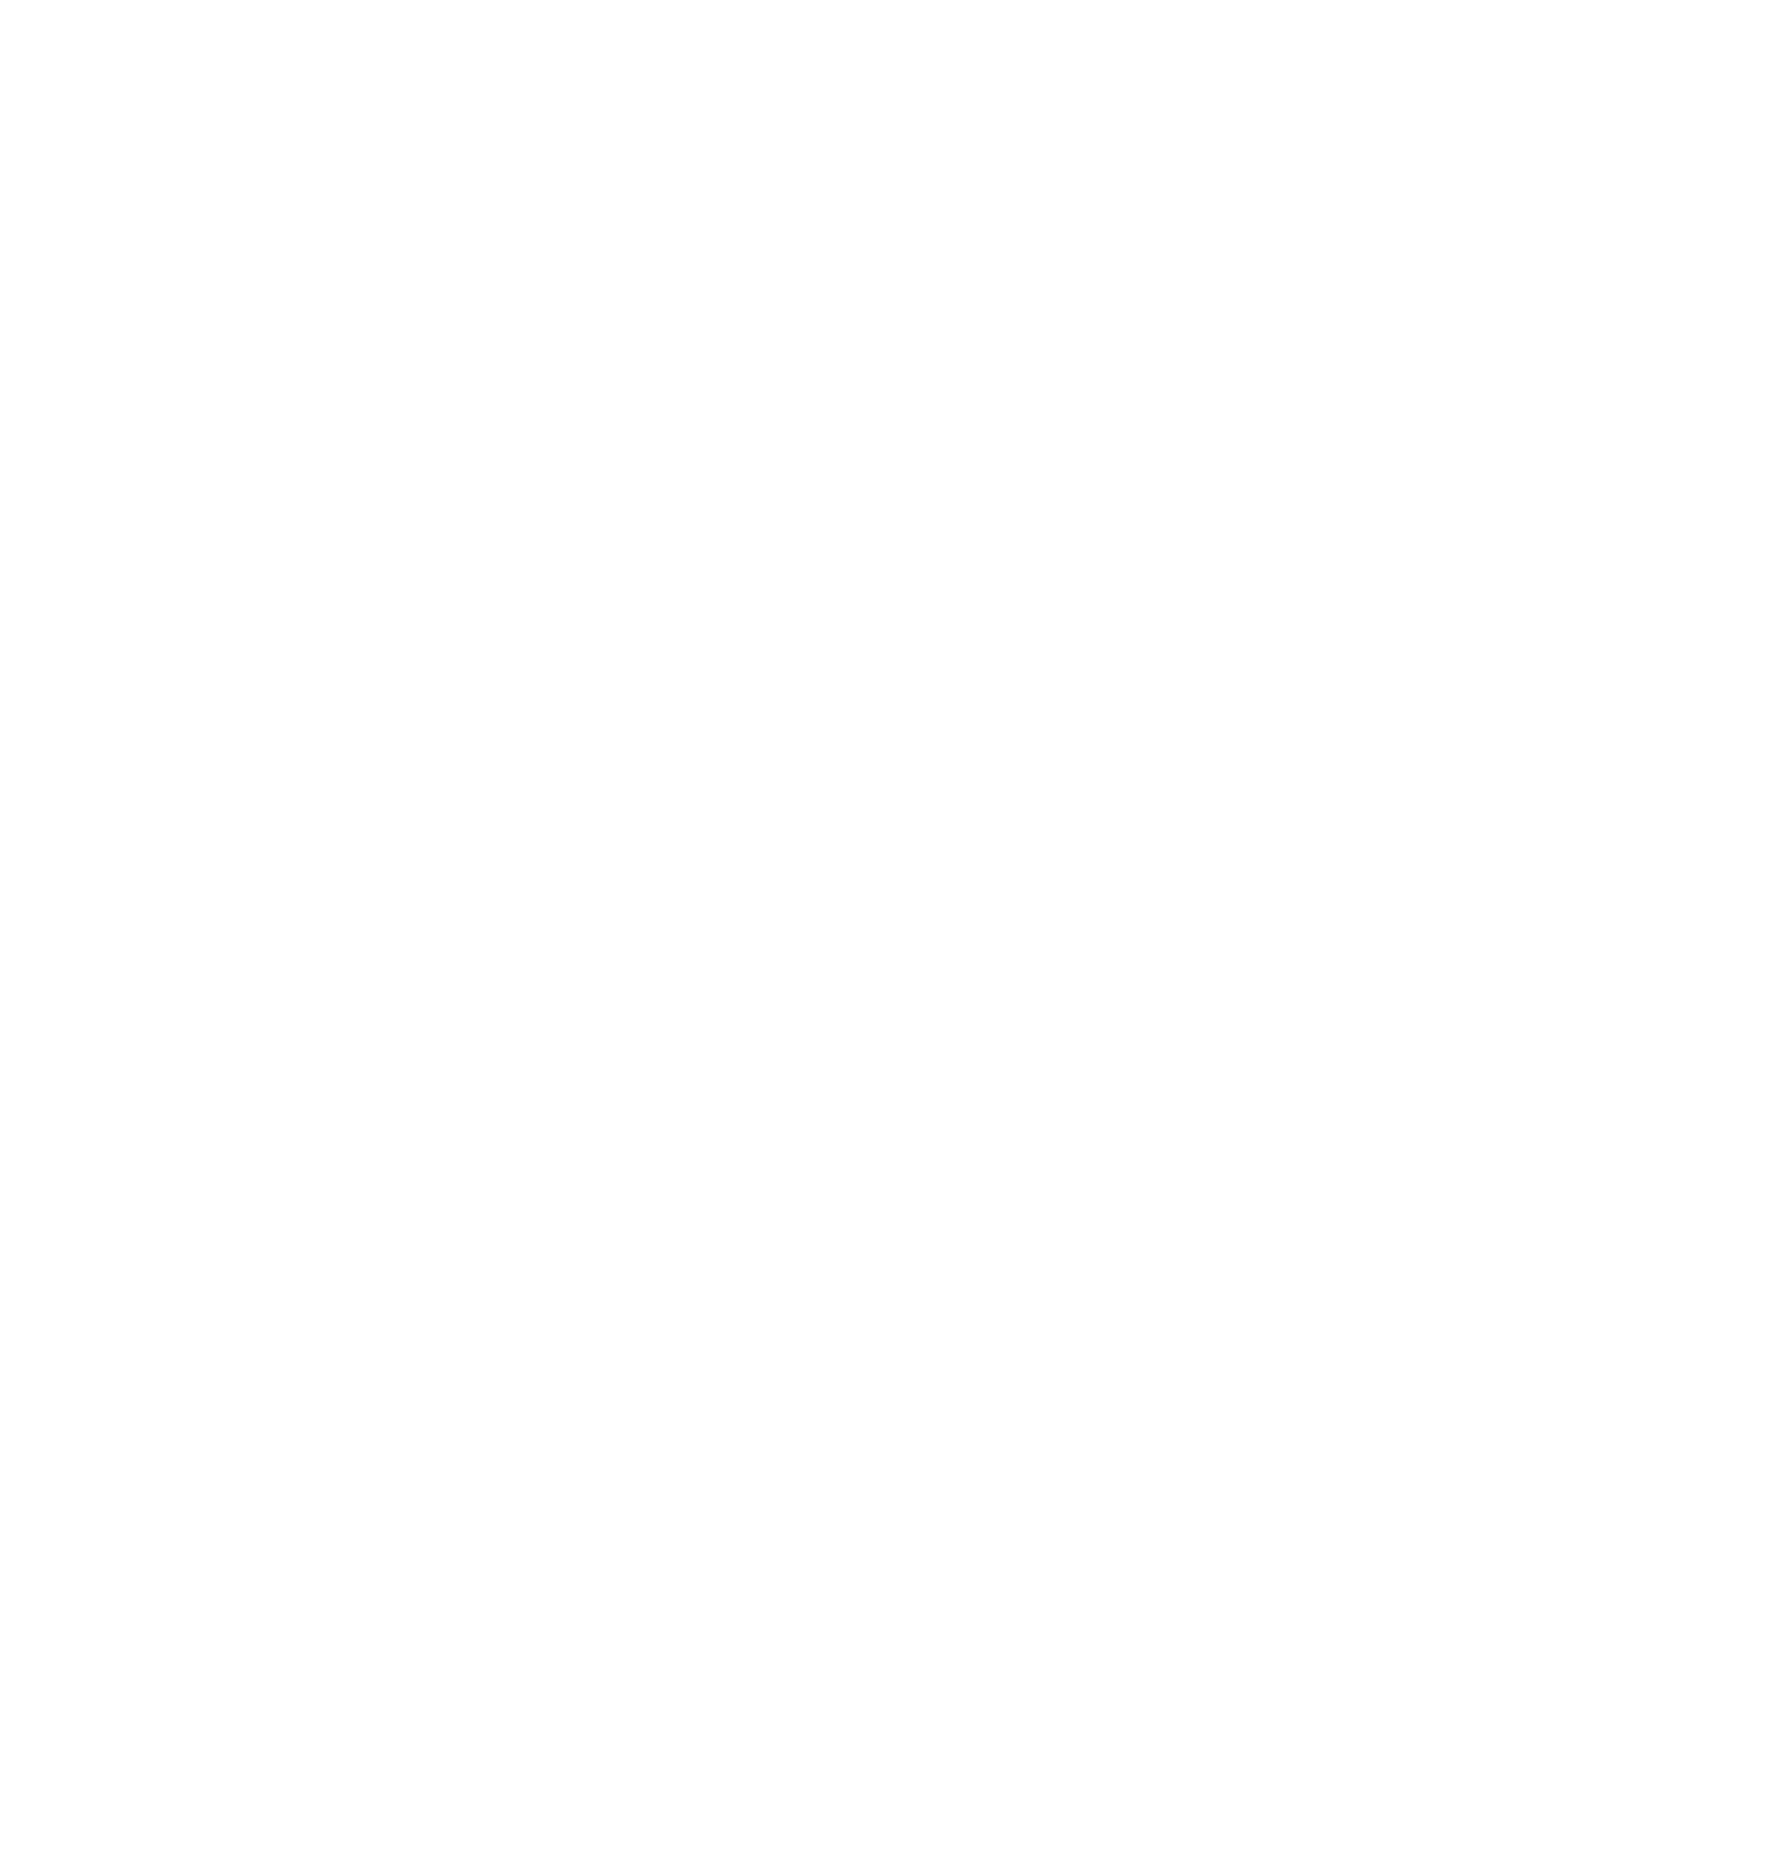 Popous Mouse White Logo.